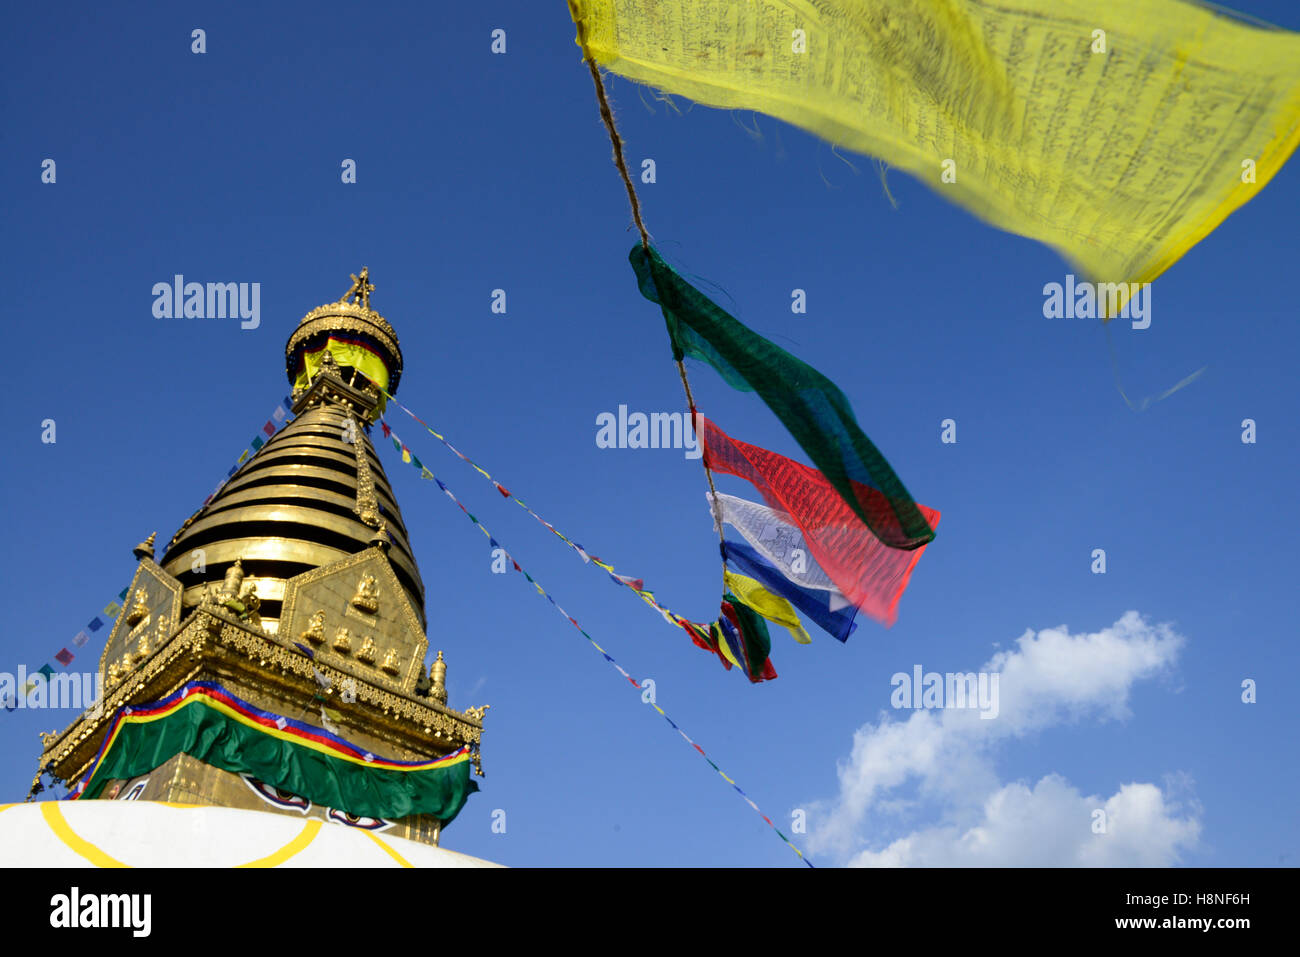 NEPAL Kathmandu, buddhist Swayambhu Stupa and prayer flags Stock Photo